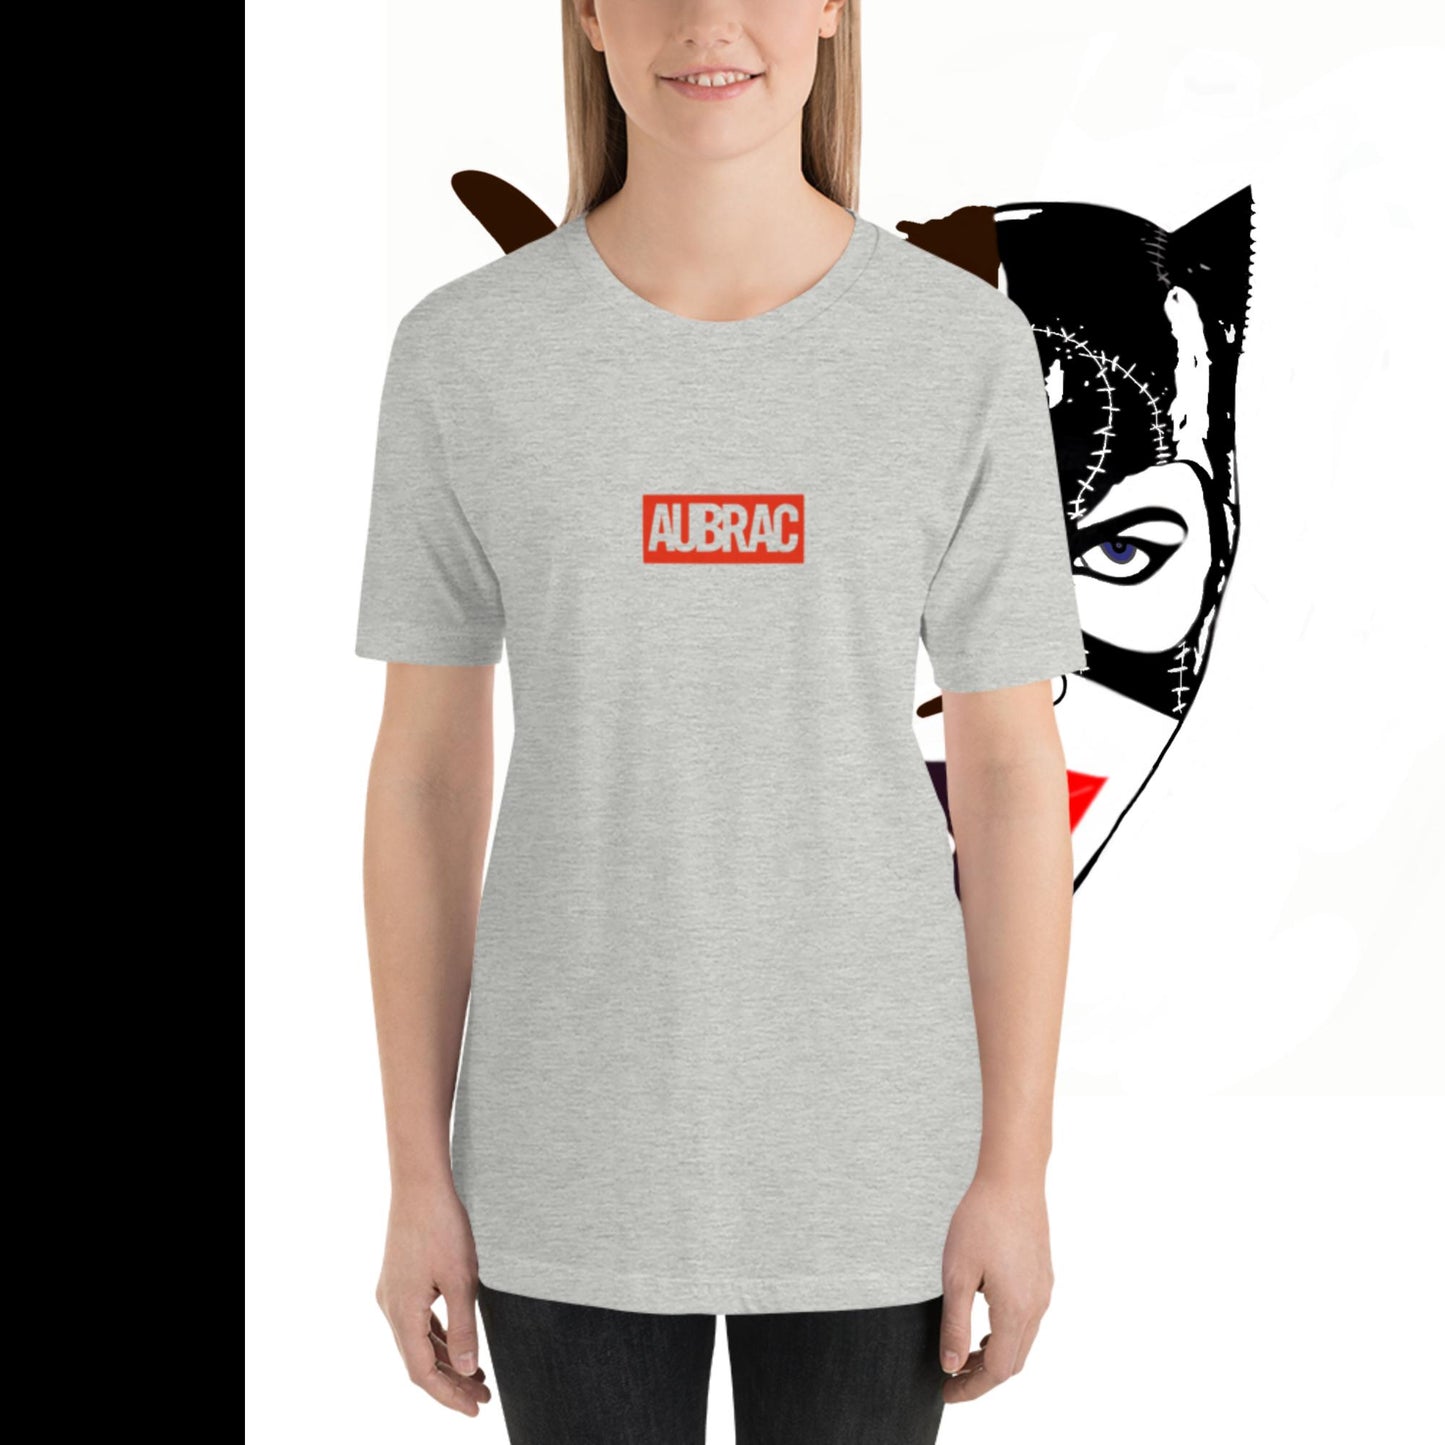 Super Héros, Aubrac, T-shirt unisexe